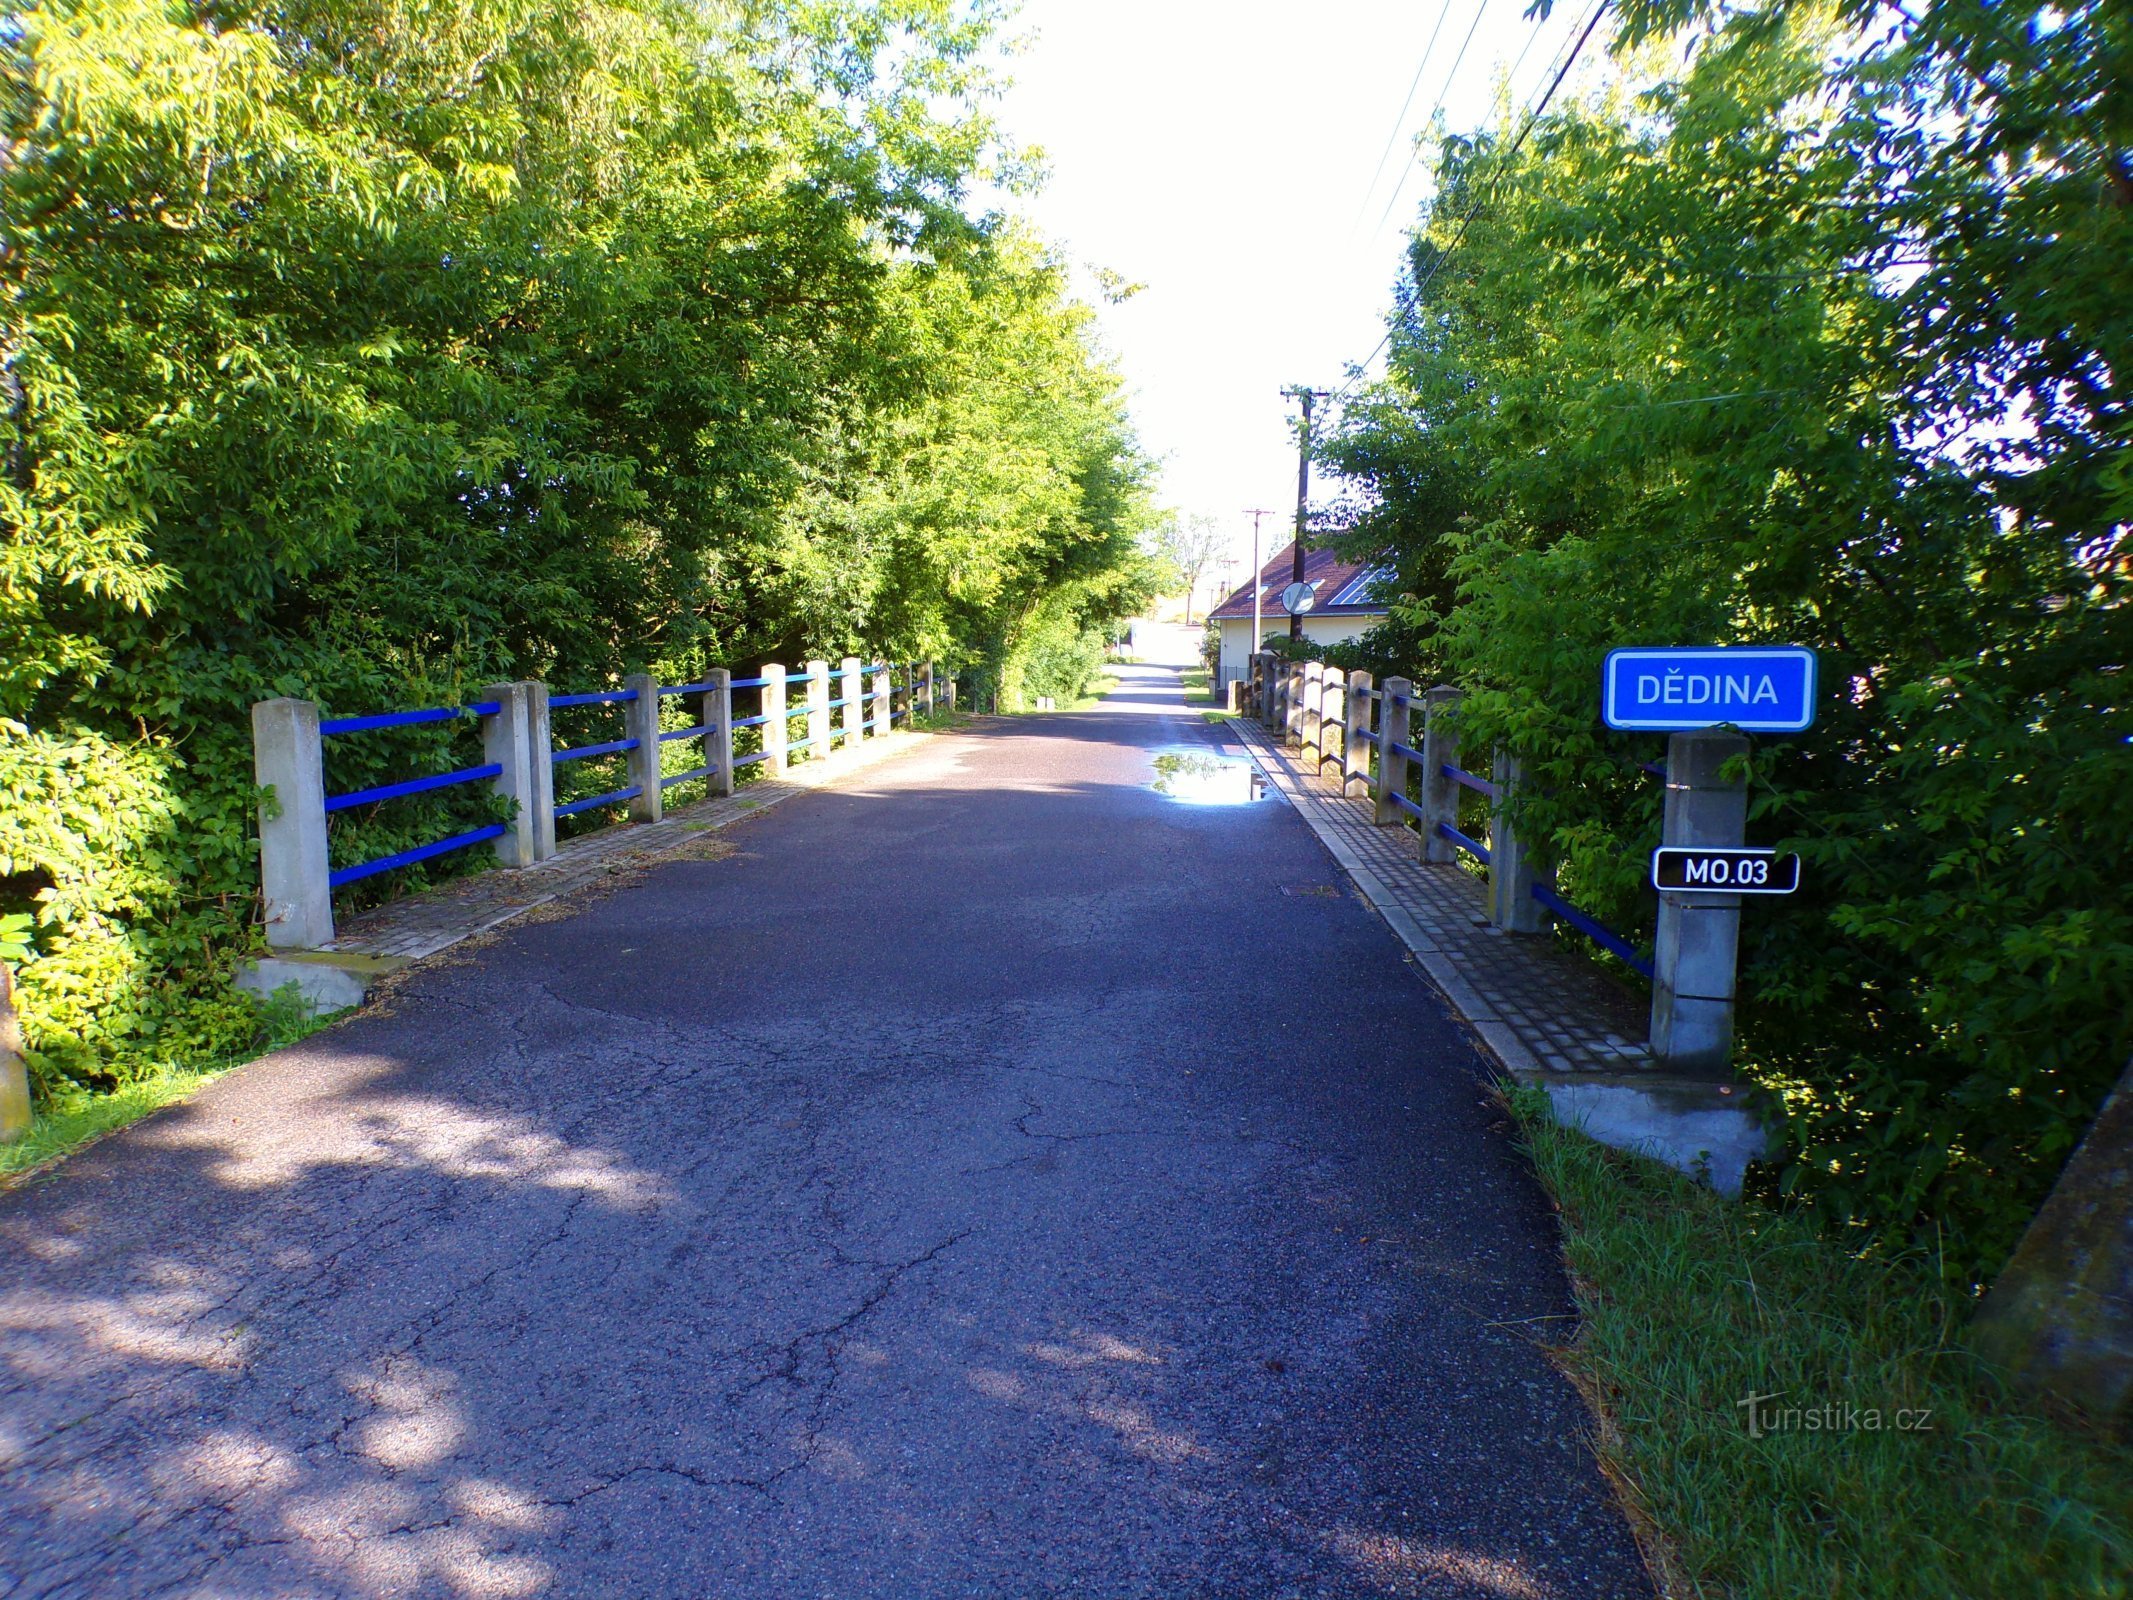 Pont sur Dědina de Mitrov à Polánek nad Dědinou (10.7.2022/XNUMX/XNUMX)